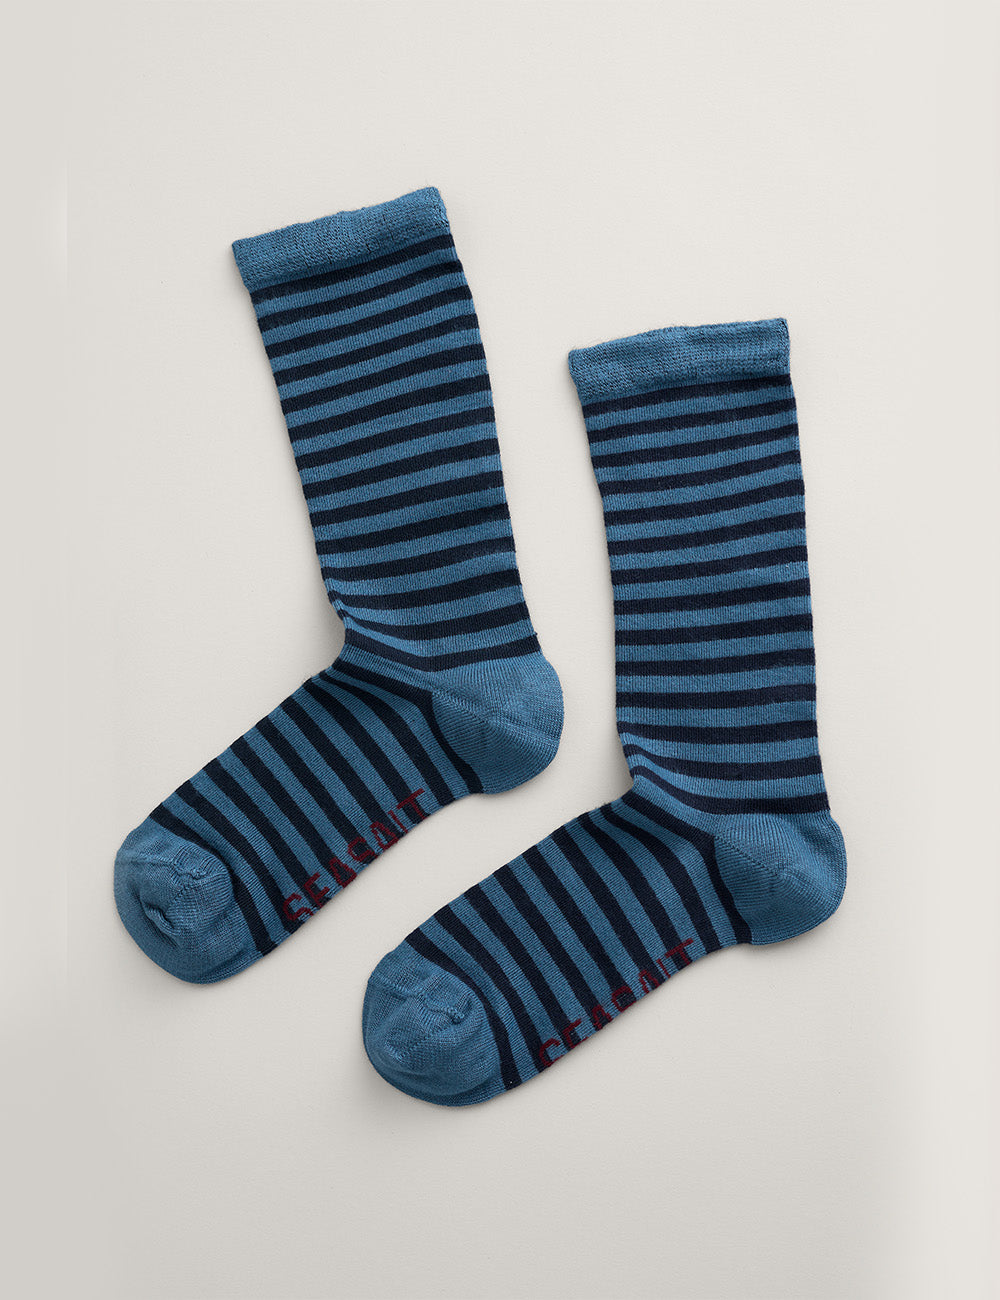 Seasalt Sailor Socks - Weatherboard Dusky Jade